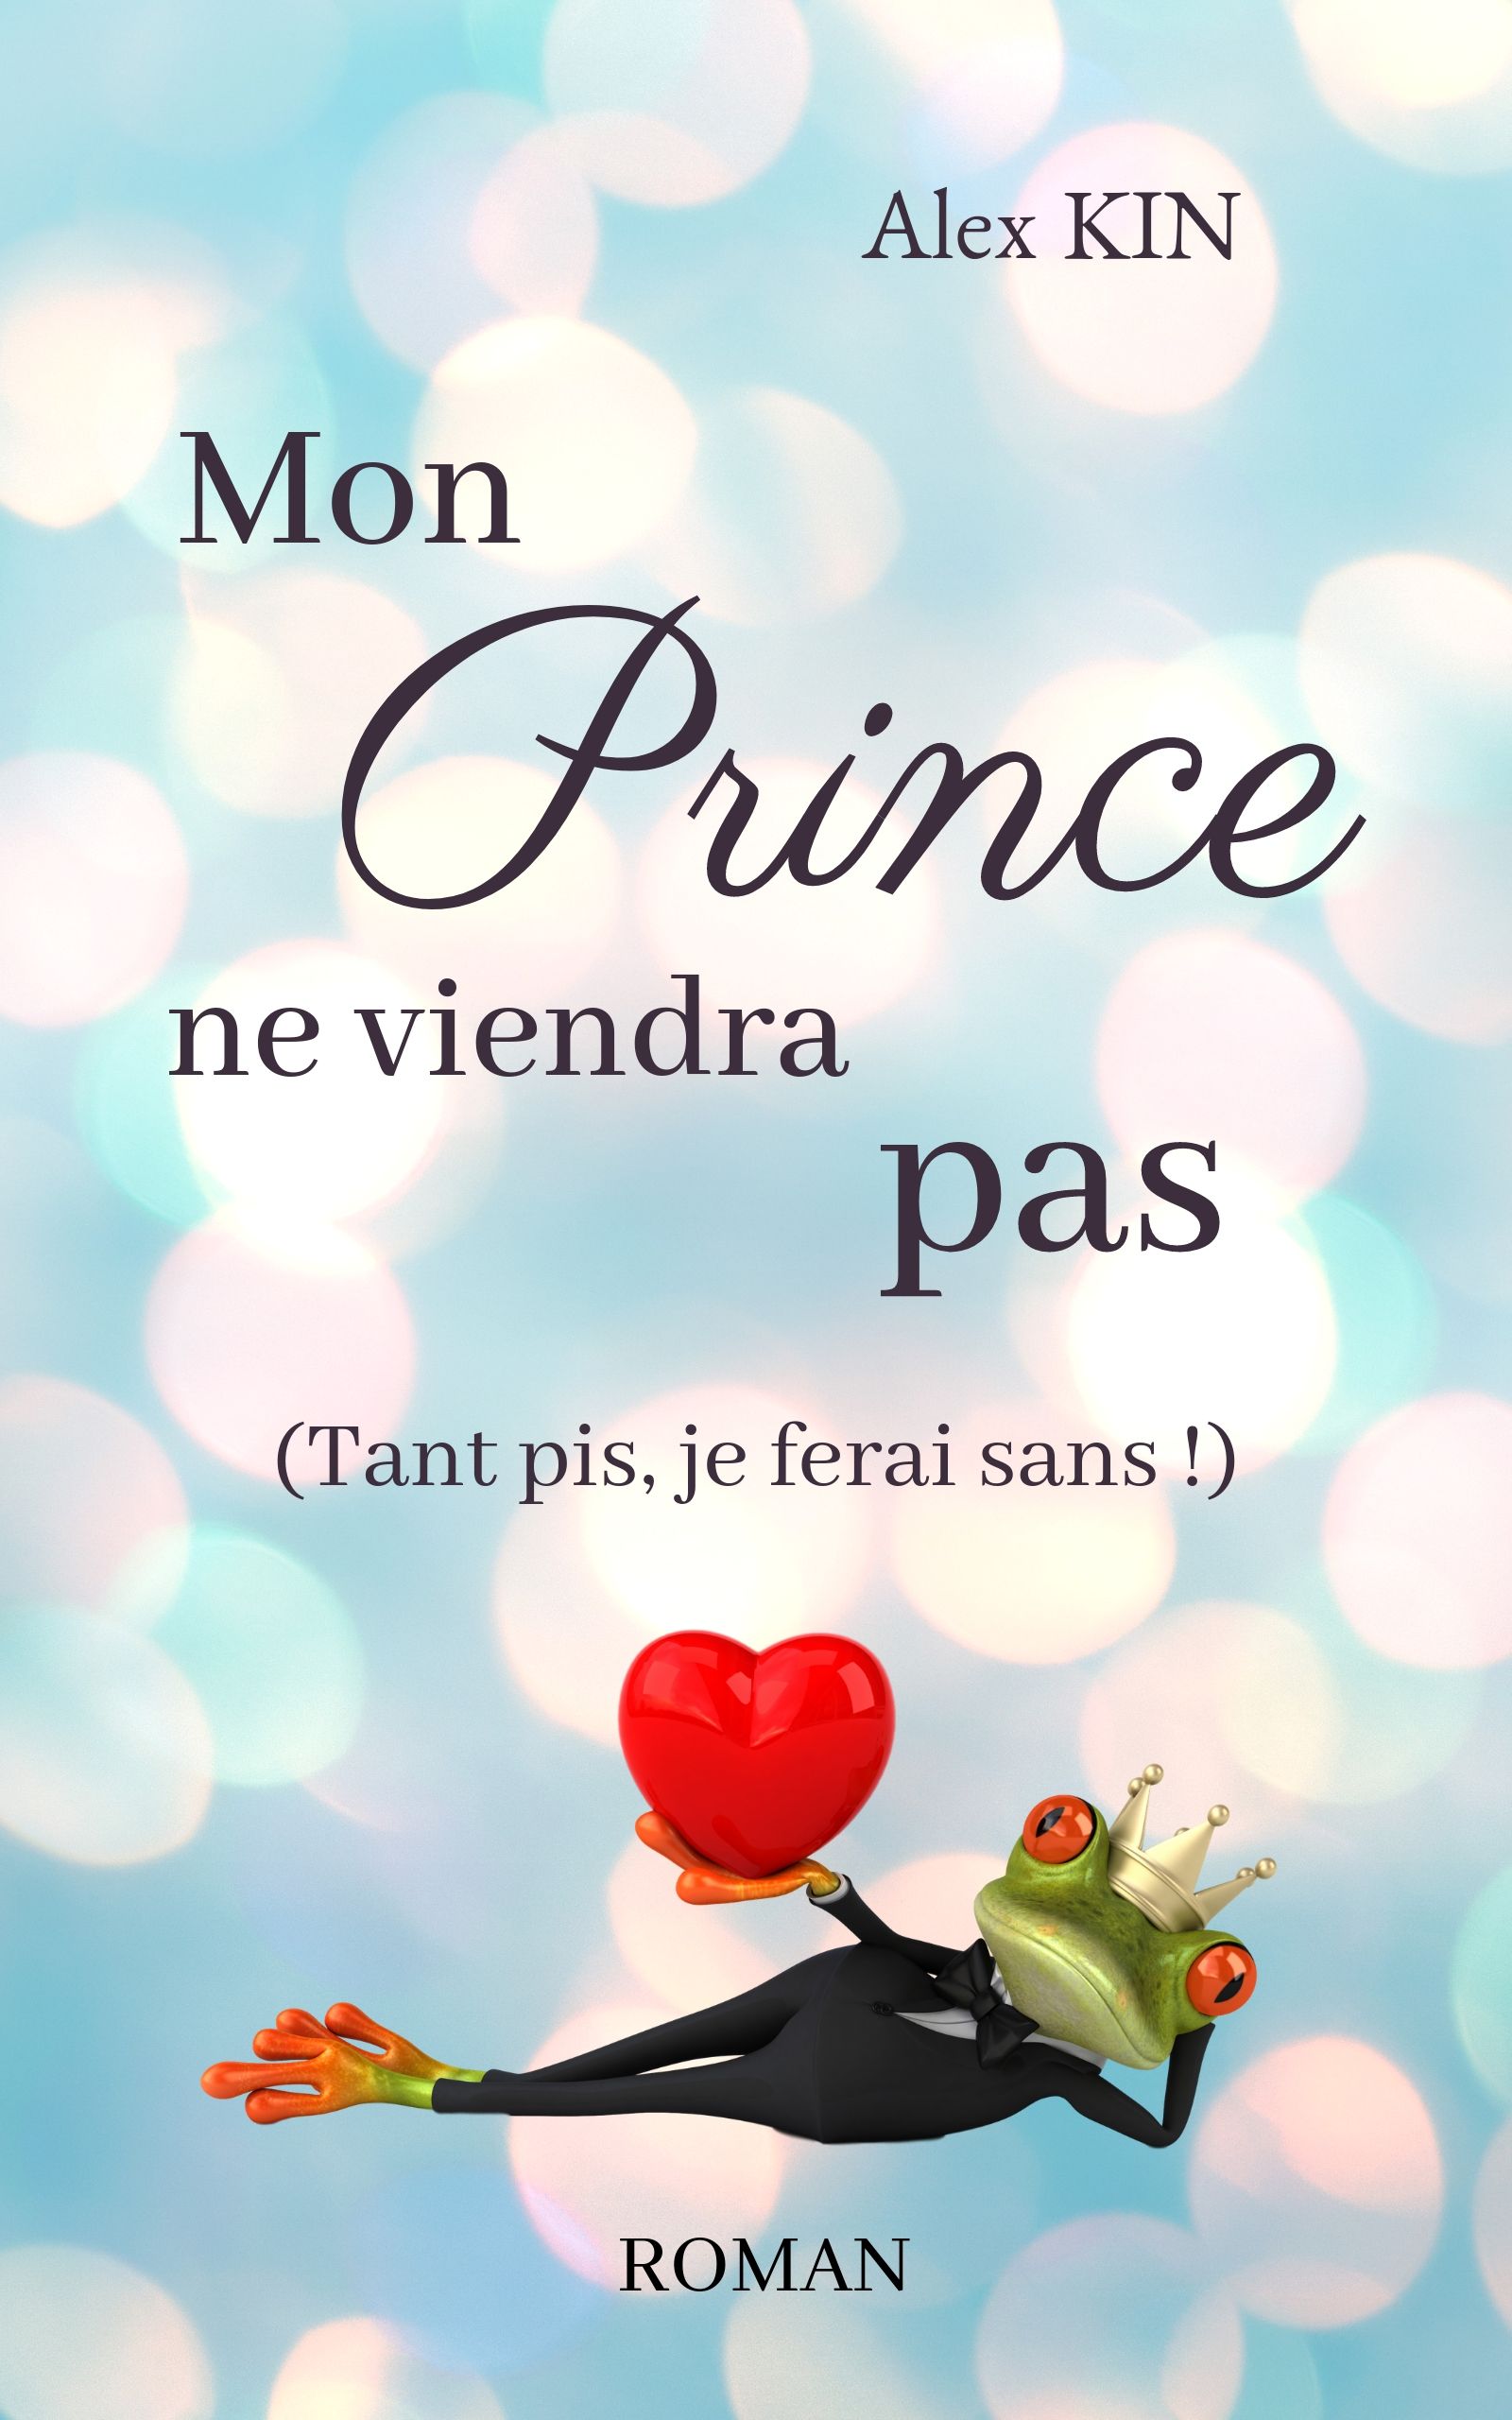 Mon Prince ne viendra pas (tant pis je ferais sans !) – Alex Kin